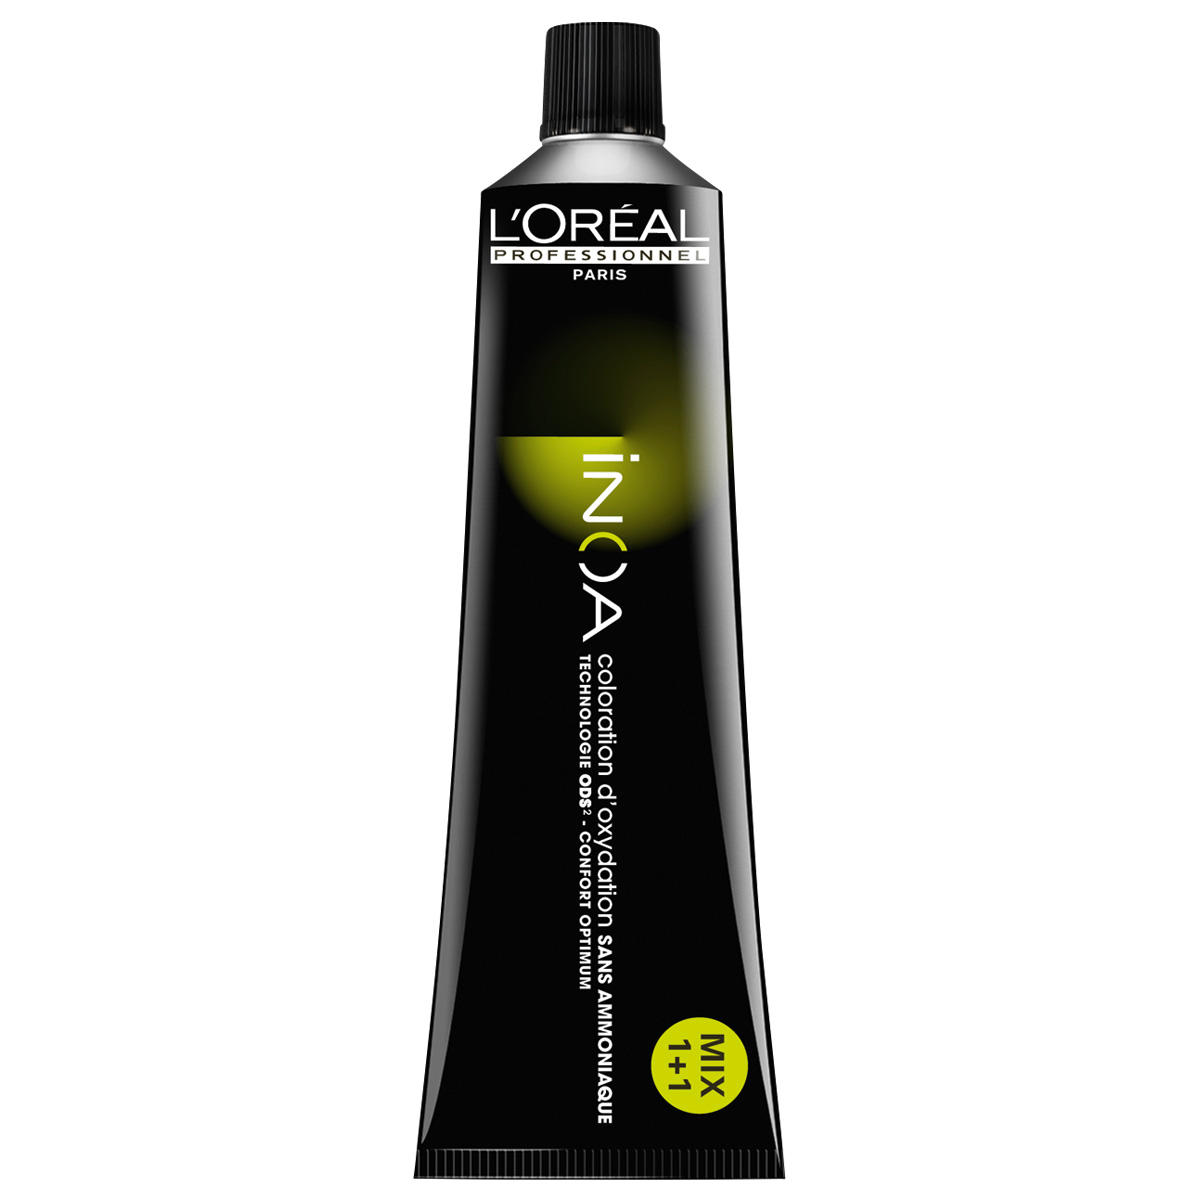 L'Oréal Professionnel Paris Coloration 2 Marrón muy oscuro, tubo 60 ml